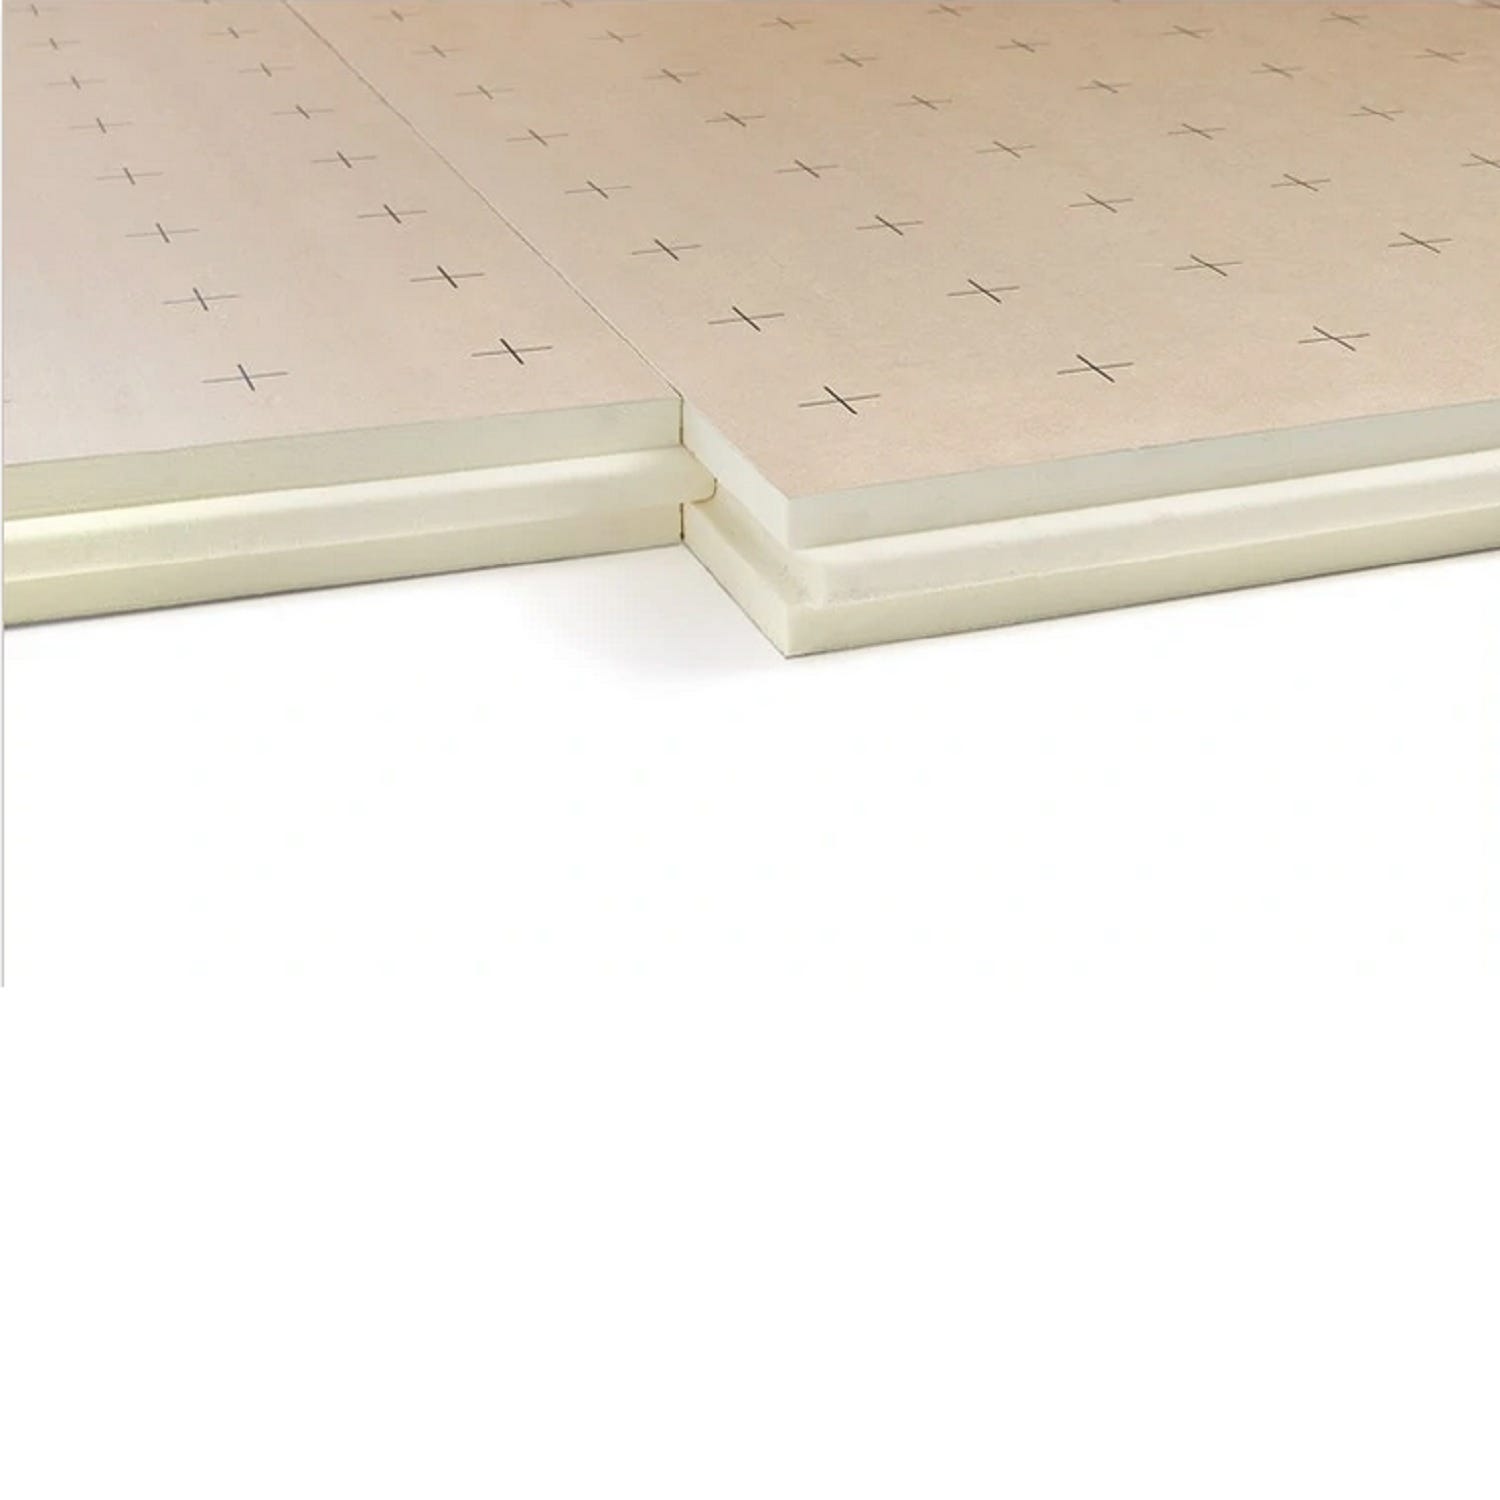 Dalle plancher chauffant épaisseur 58 millimètres R2.60 - paquet de 7 dalles - 8.4 m2 2